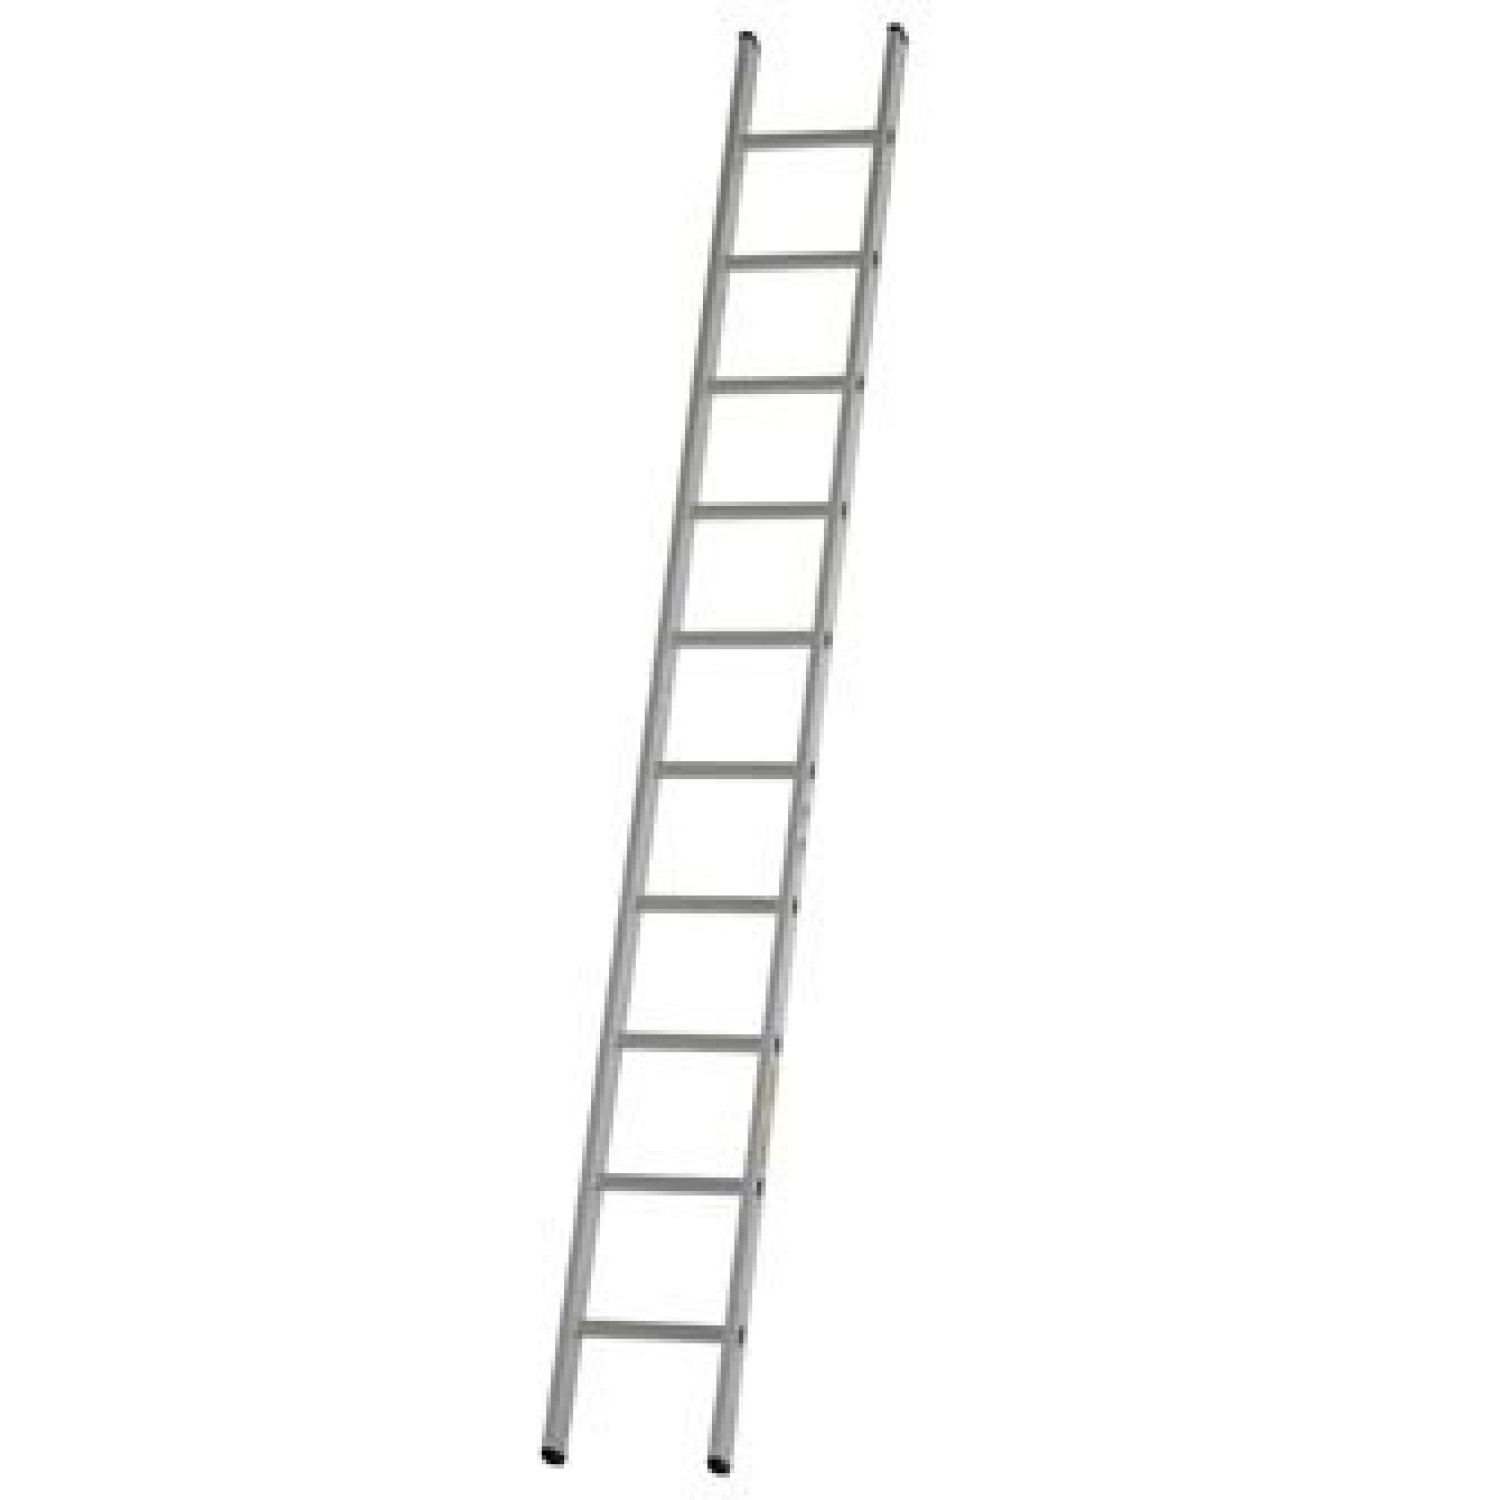 dirks enkele rechte ladder 61 meter gecoat